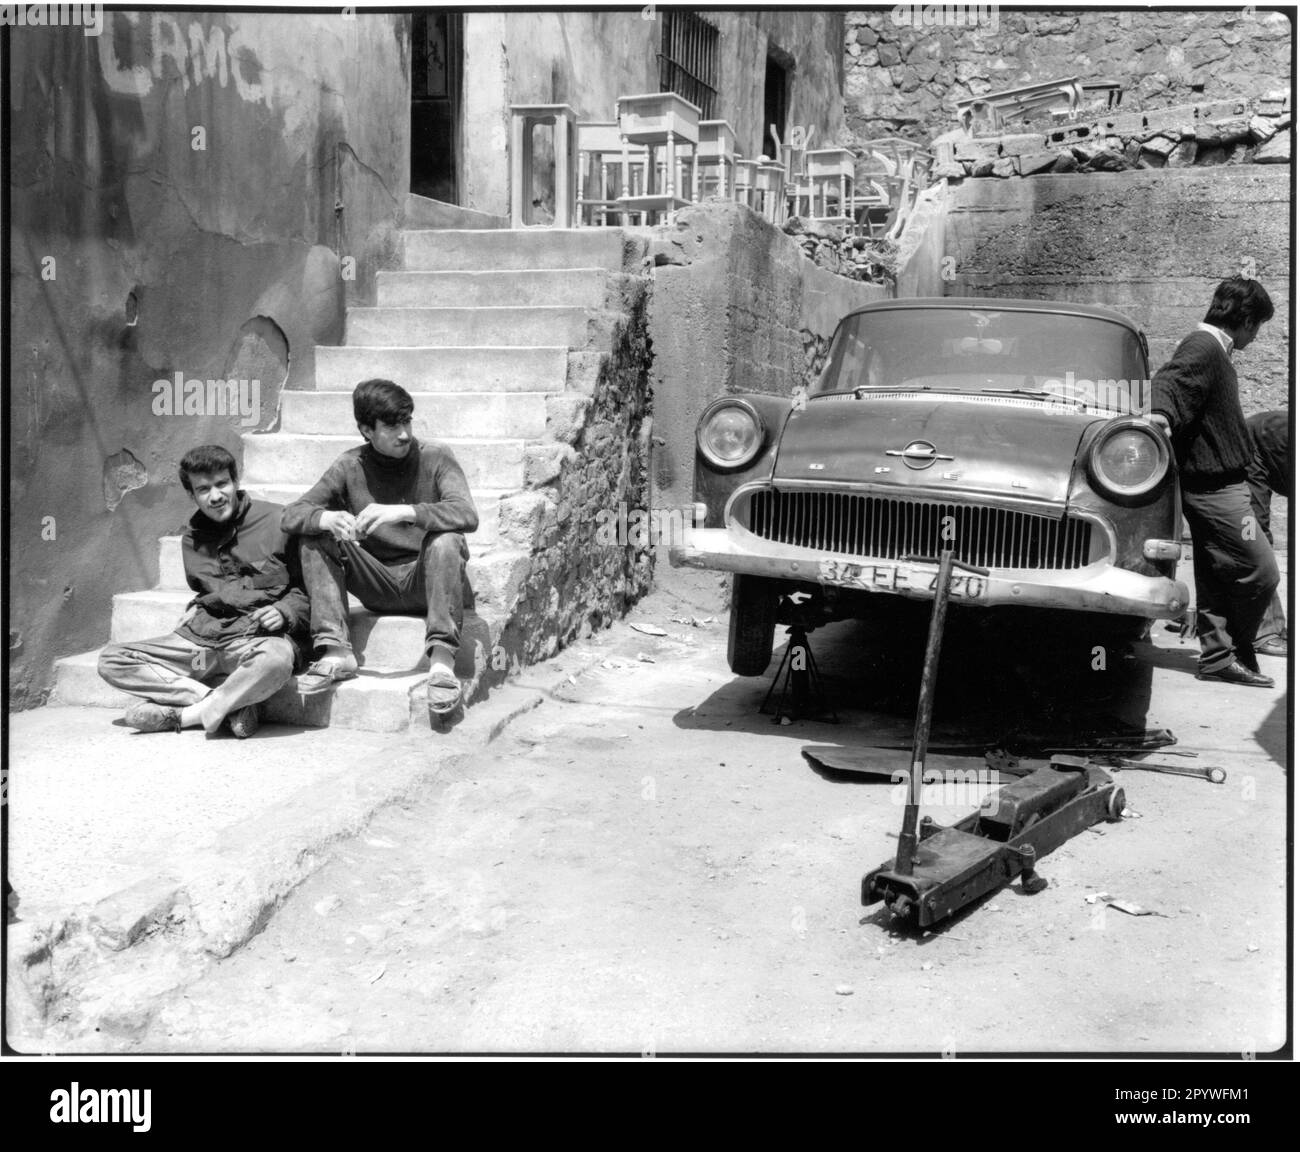 Istanbul (Turchia). Street scene: Uomini durante la pausa pranzo (quartiere Beyoglu) accanto a un vecchio, saccheggiato Opel, auto in riparazione. Bianco e nero. Foto, 1994. Foto Stock